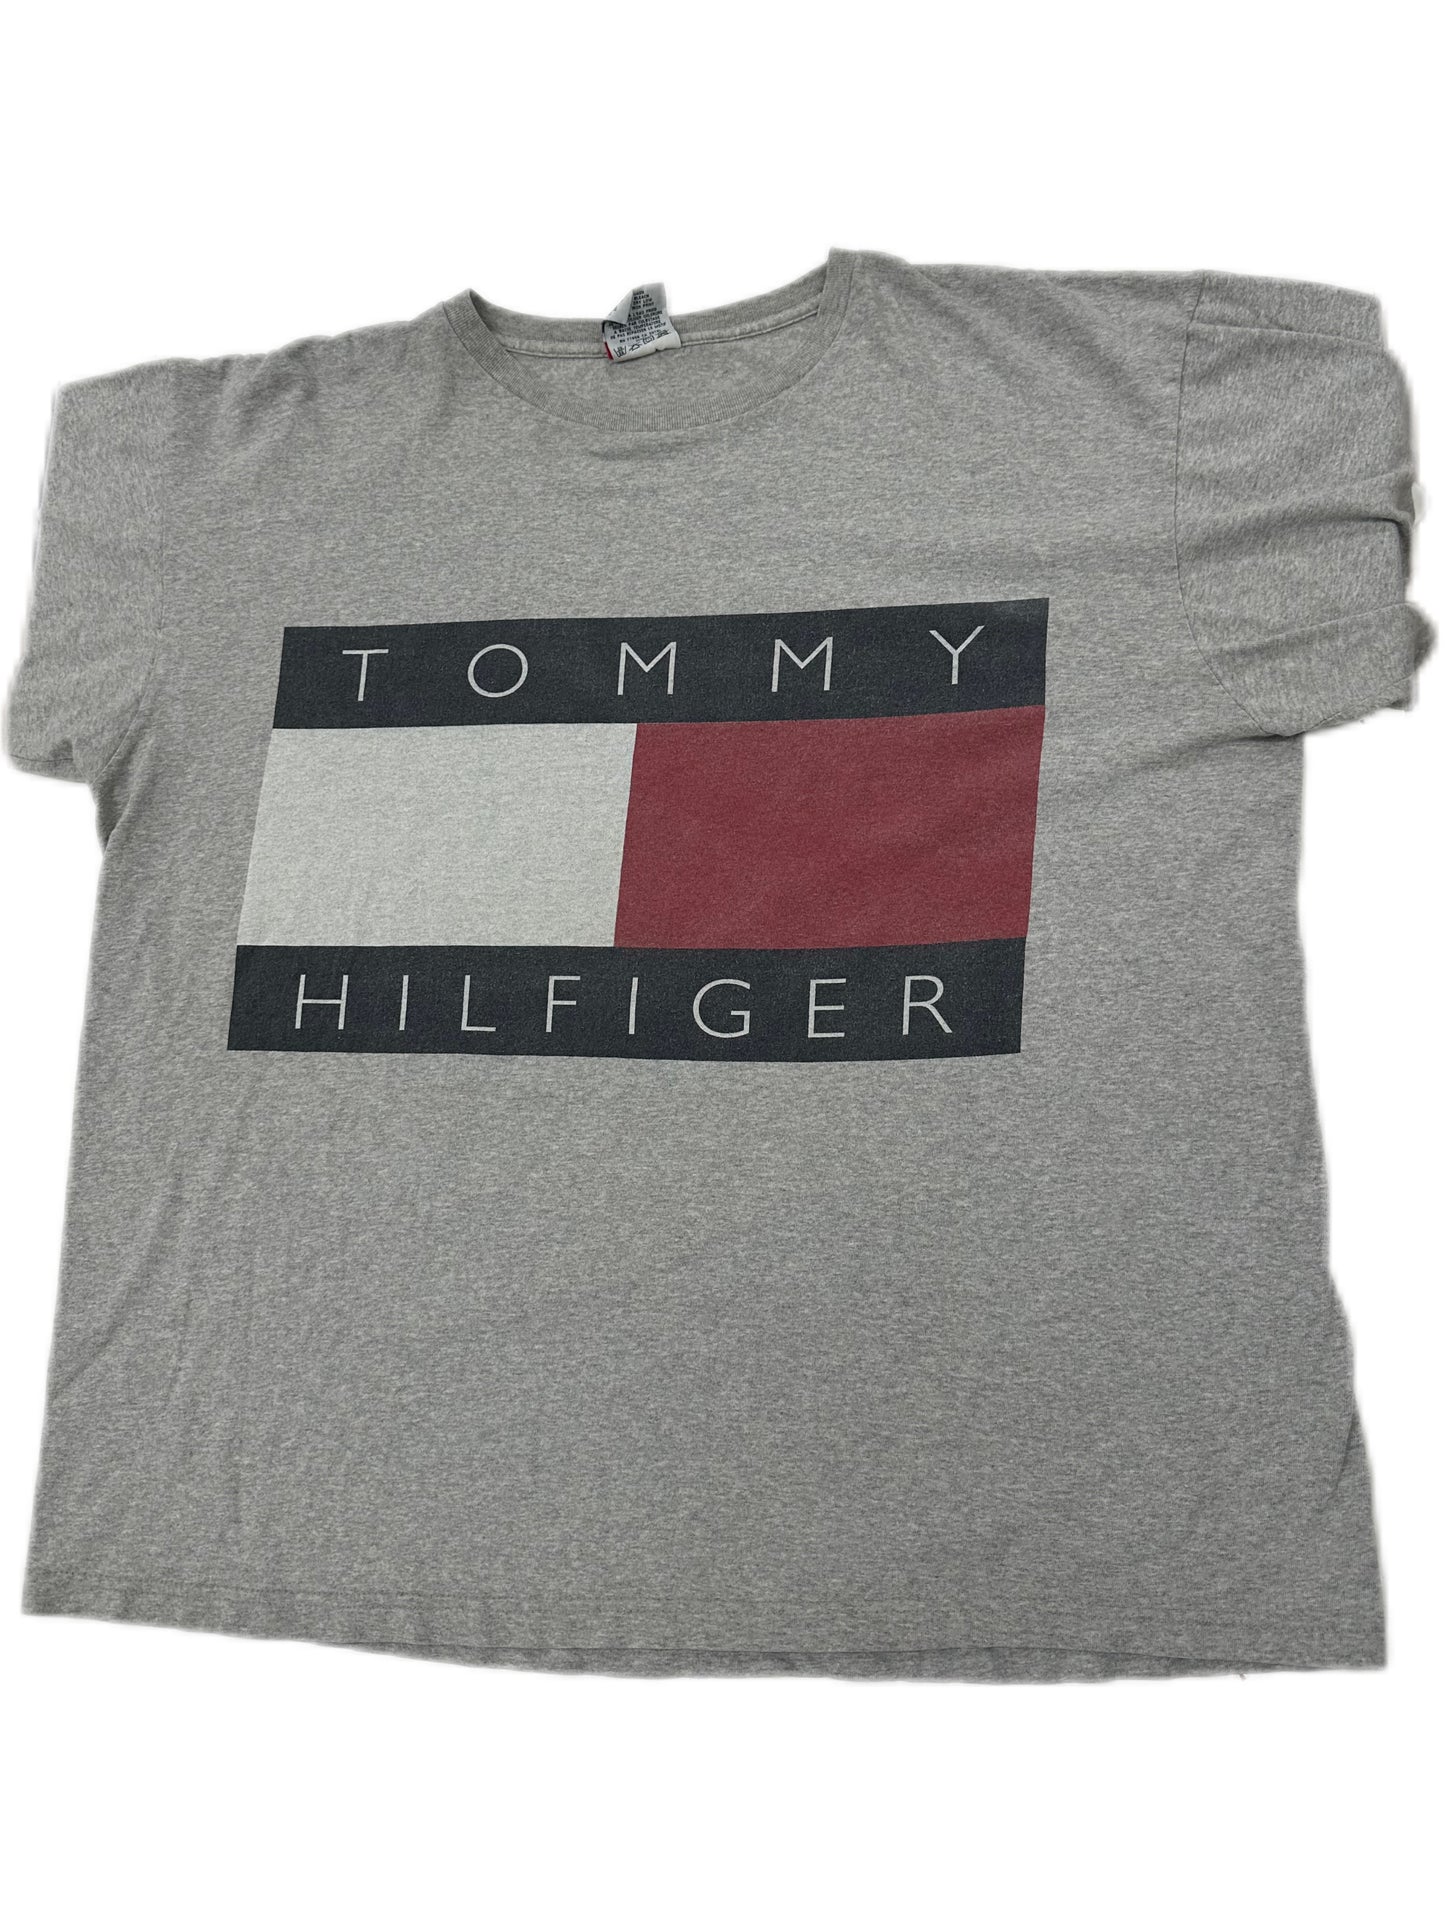 Vintage Tommy Hilfiger t-Shirt Grey